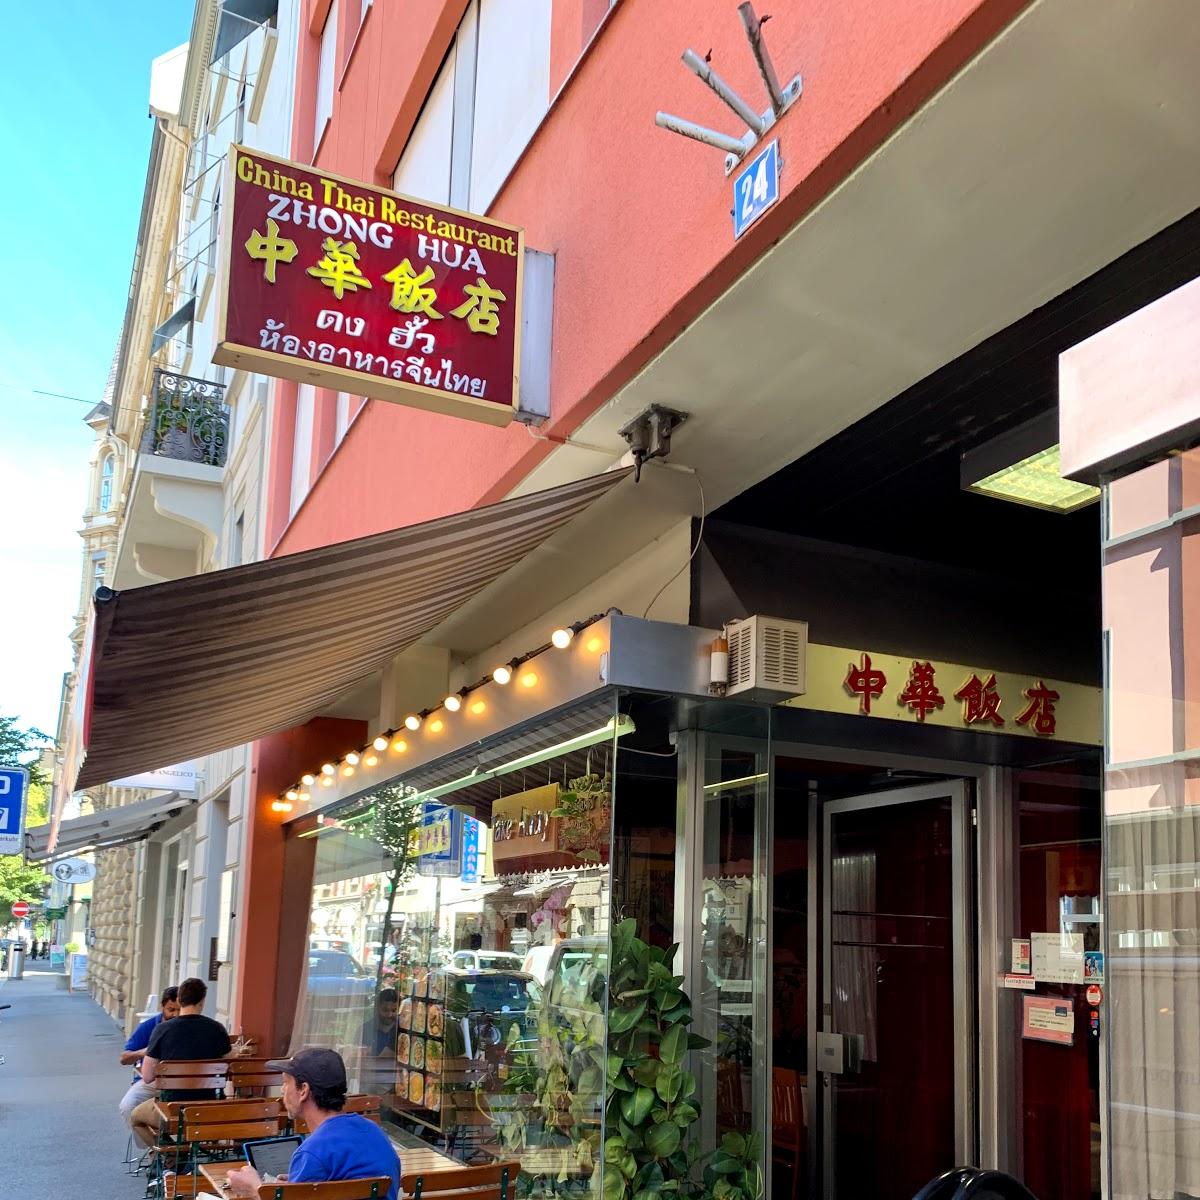 Restaurant "Zhong Hua" in Zürich